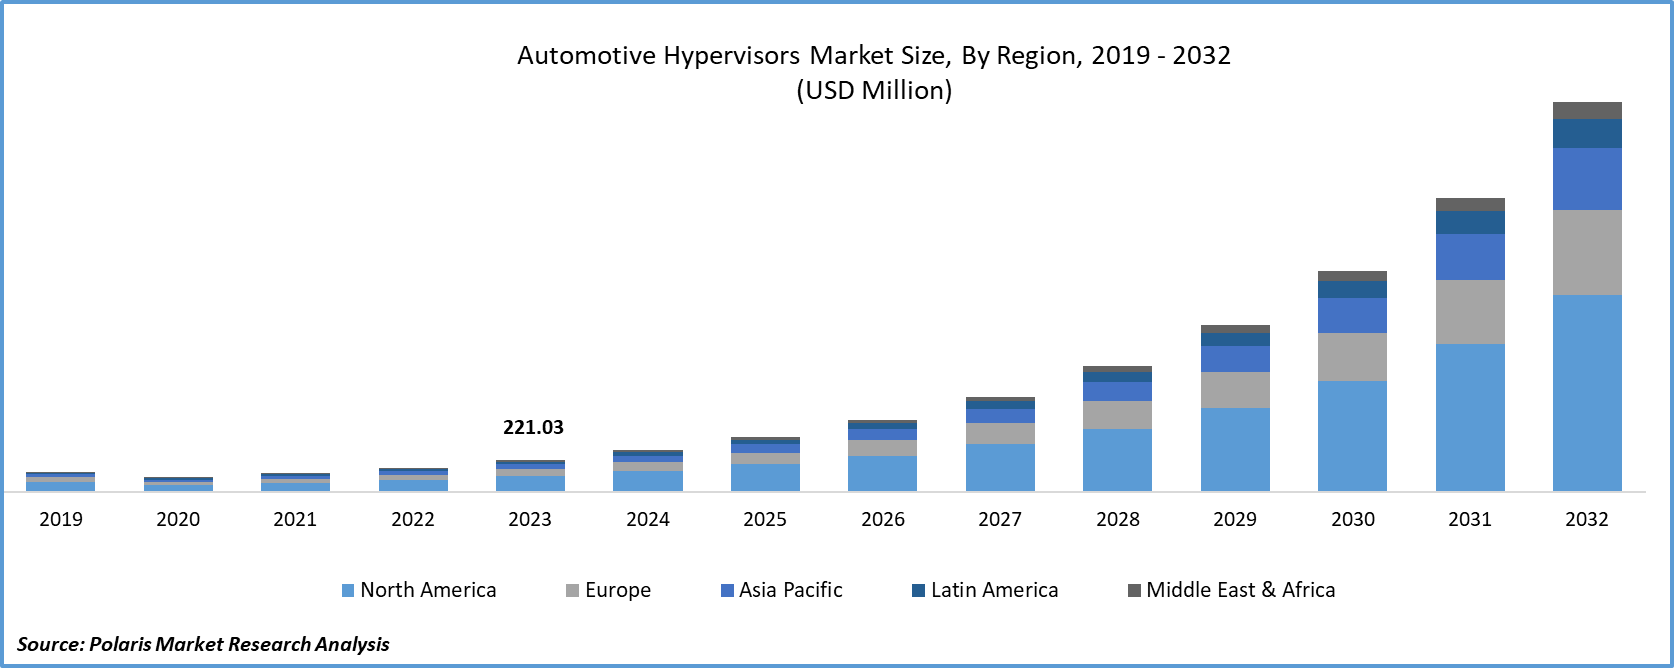 Automotive Hypervisors Market Size